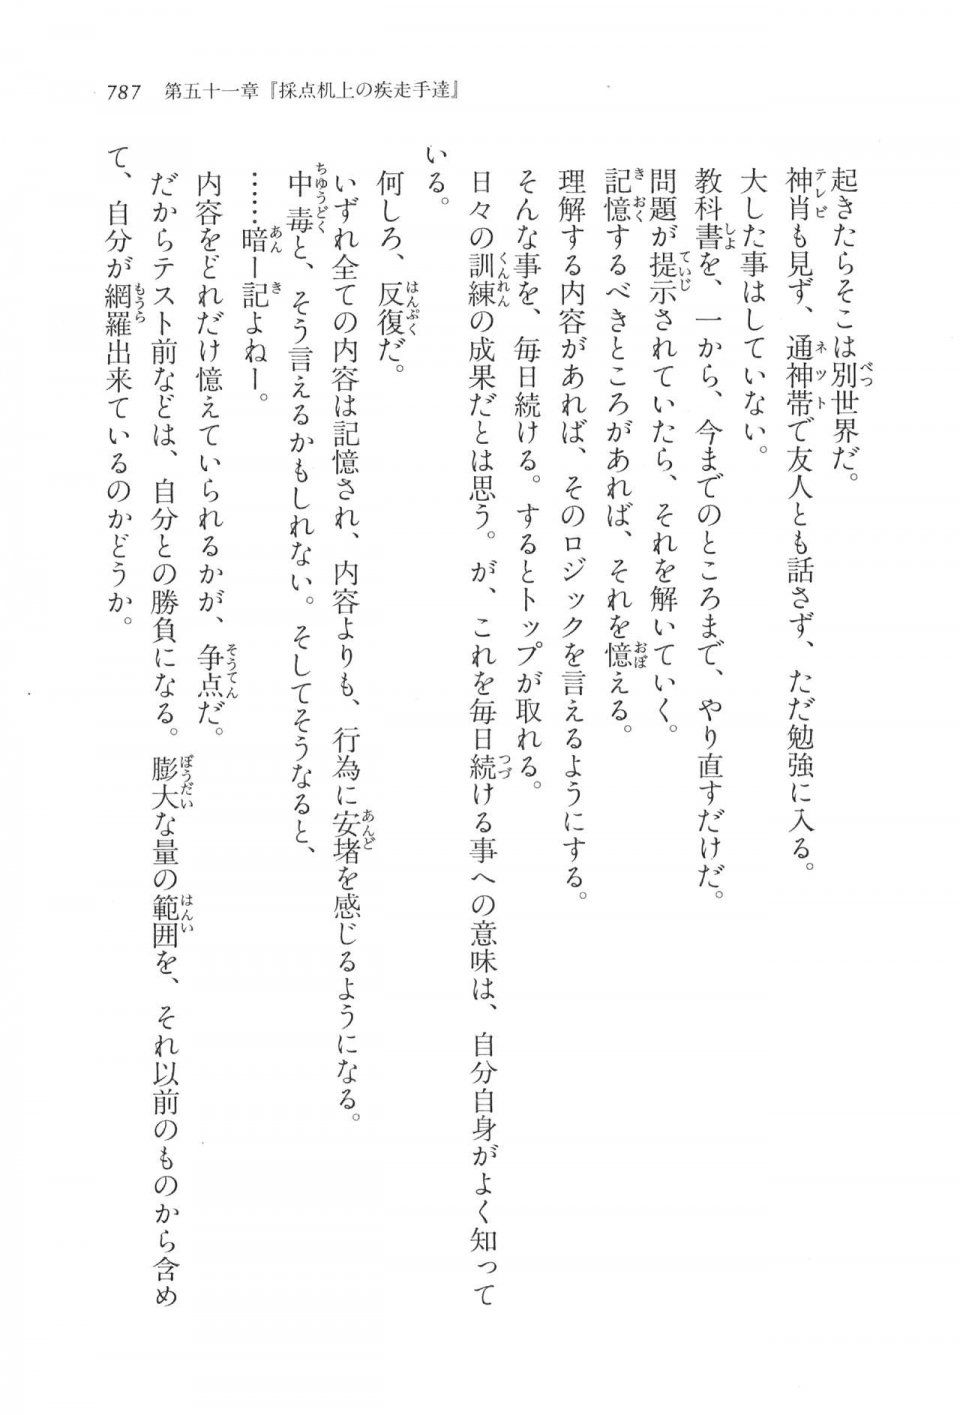 Kyoukai Senjou no Horizon LN Vol 17(7B) - Photo #789